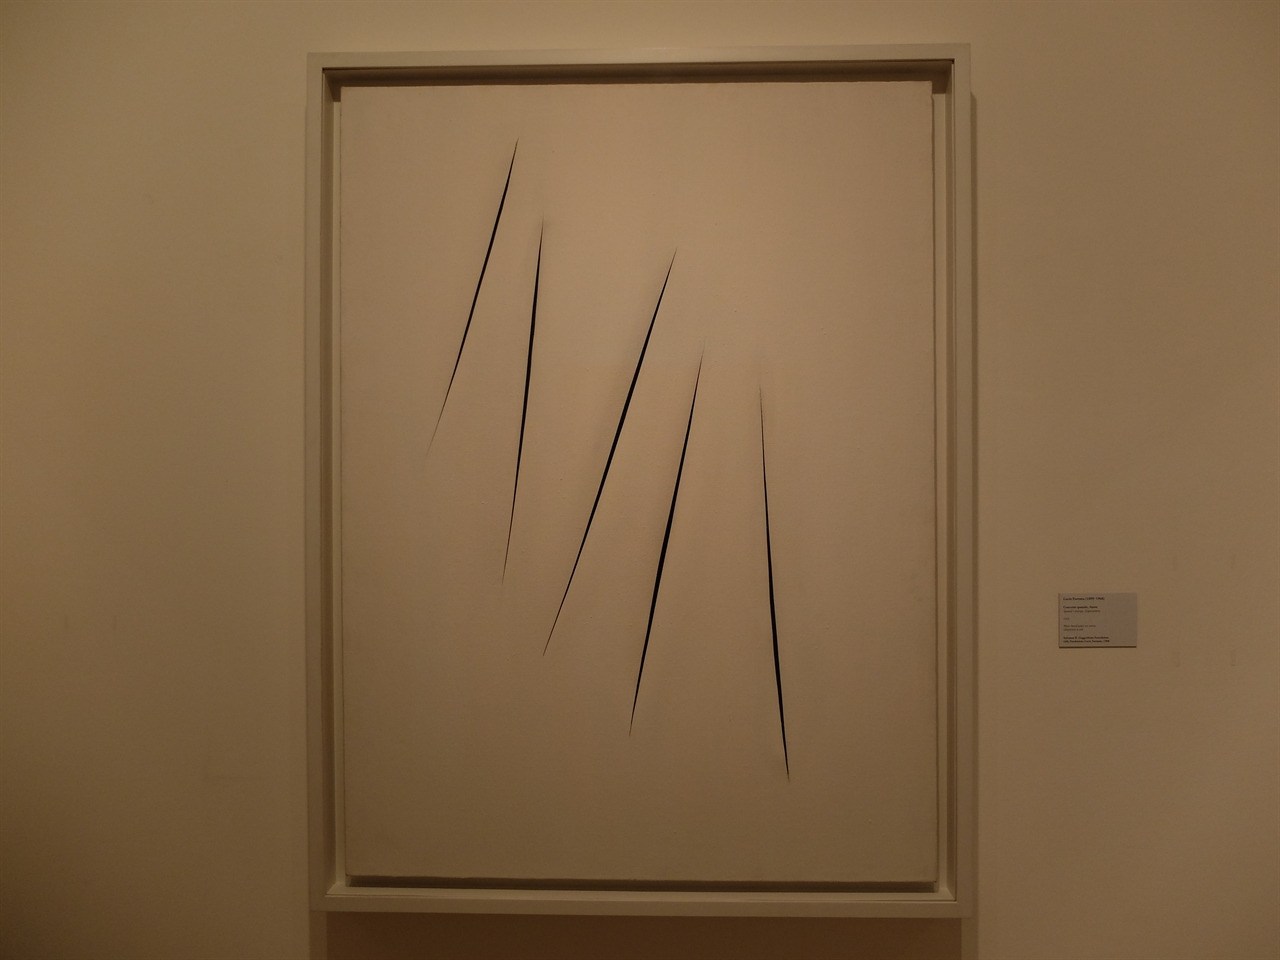 루치오 폰타나, <공간 개념, 기대>. 베네치아 페기 구겐하임 미술관. 하얀색 캔버스에 남은 것은 붓자국이 아니라 5개의 날카로운 칼자국입니다. 회화사에 전체에 대한 부정적 혁신입니다. 